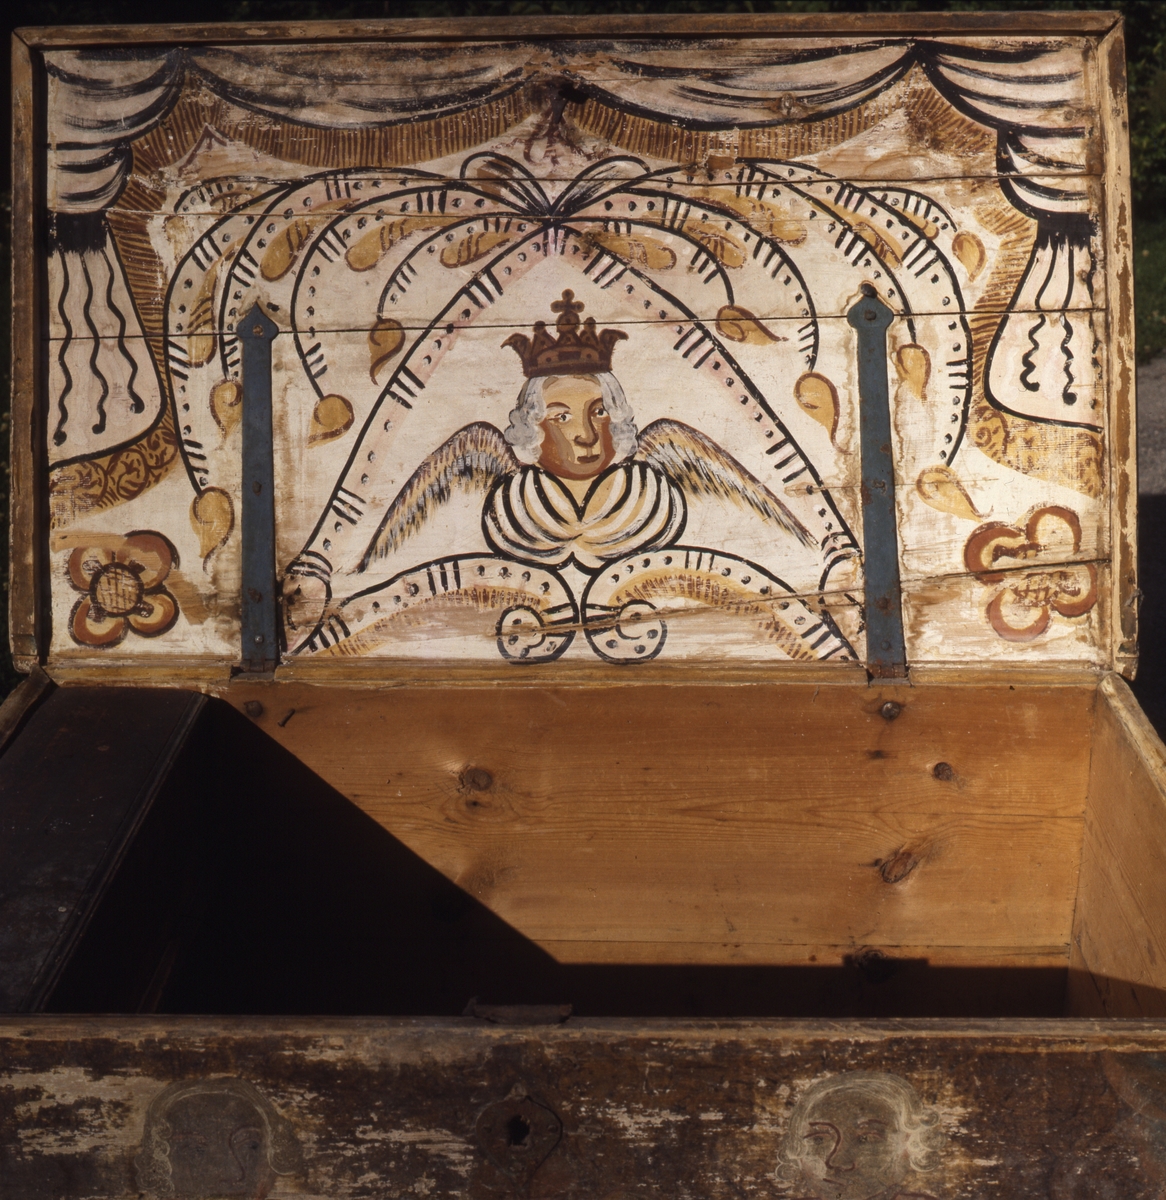 Målning på insidan av kistlock, ängel med krona.